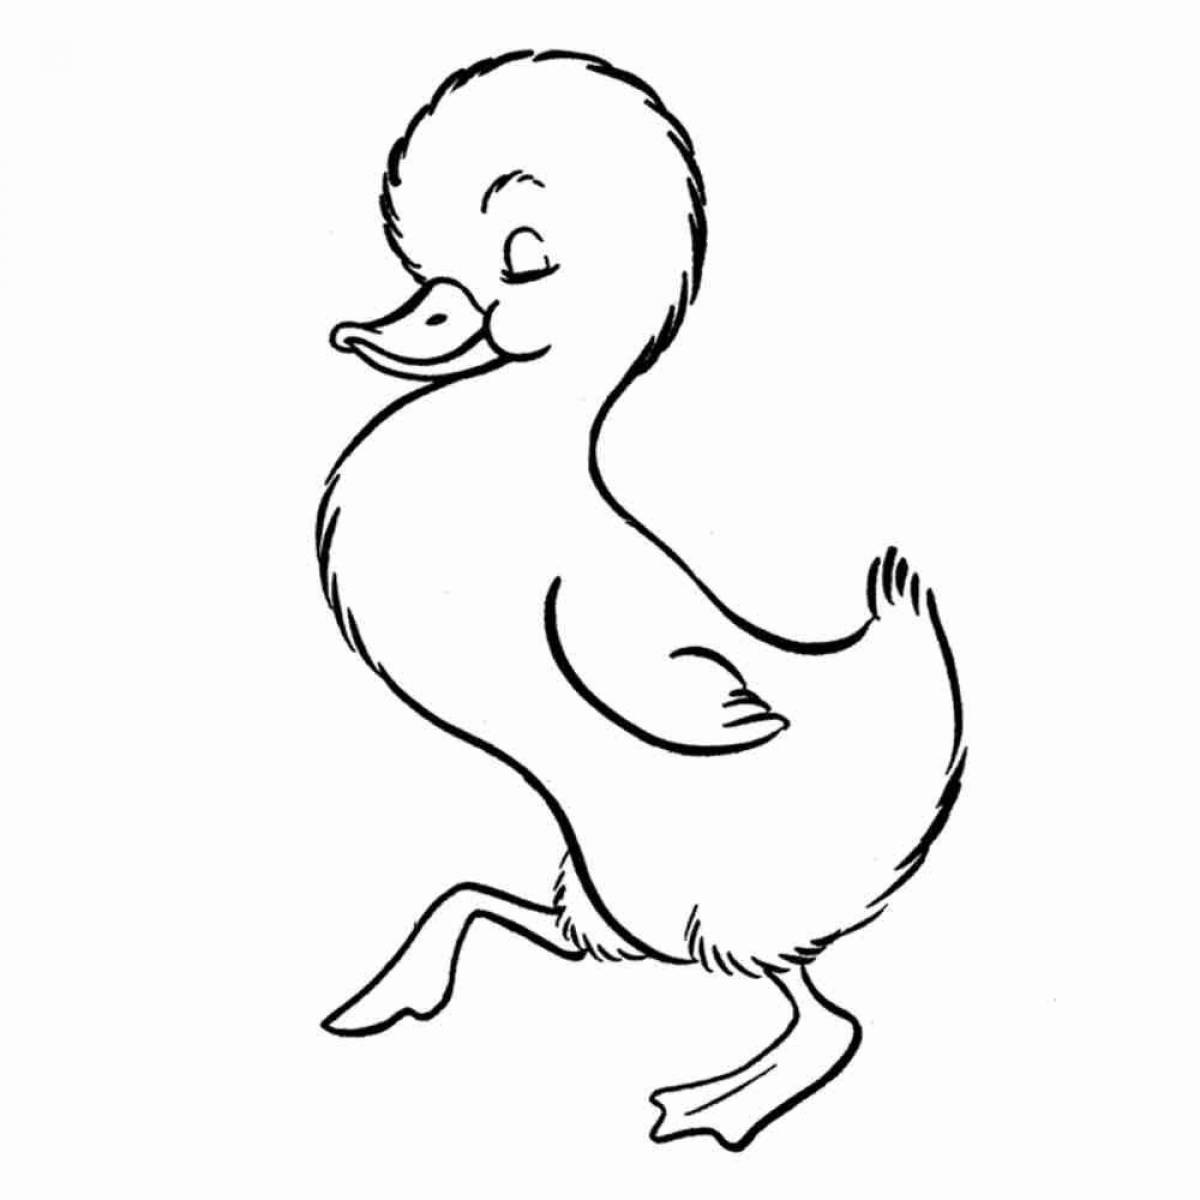 Duck #9